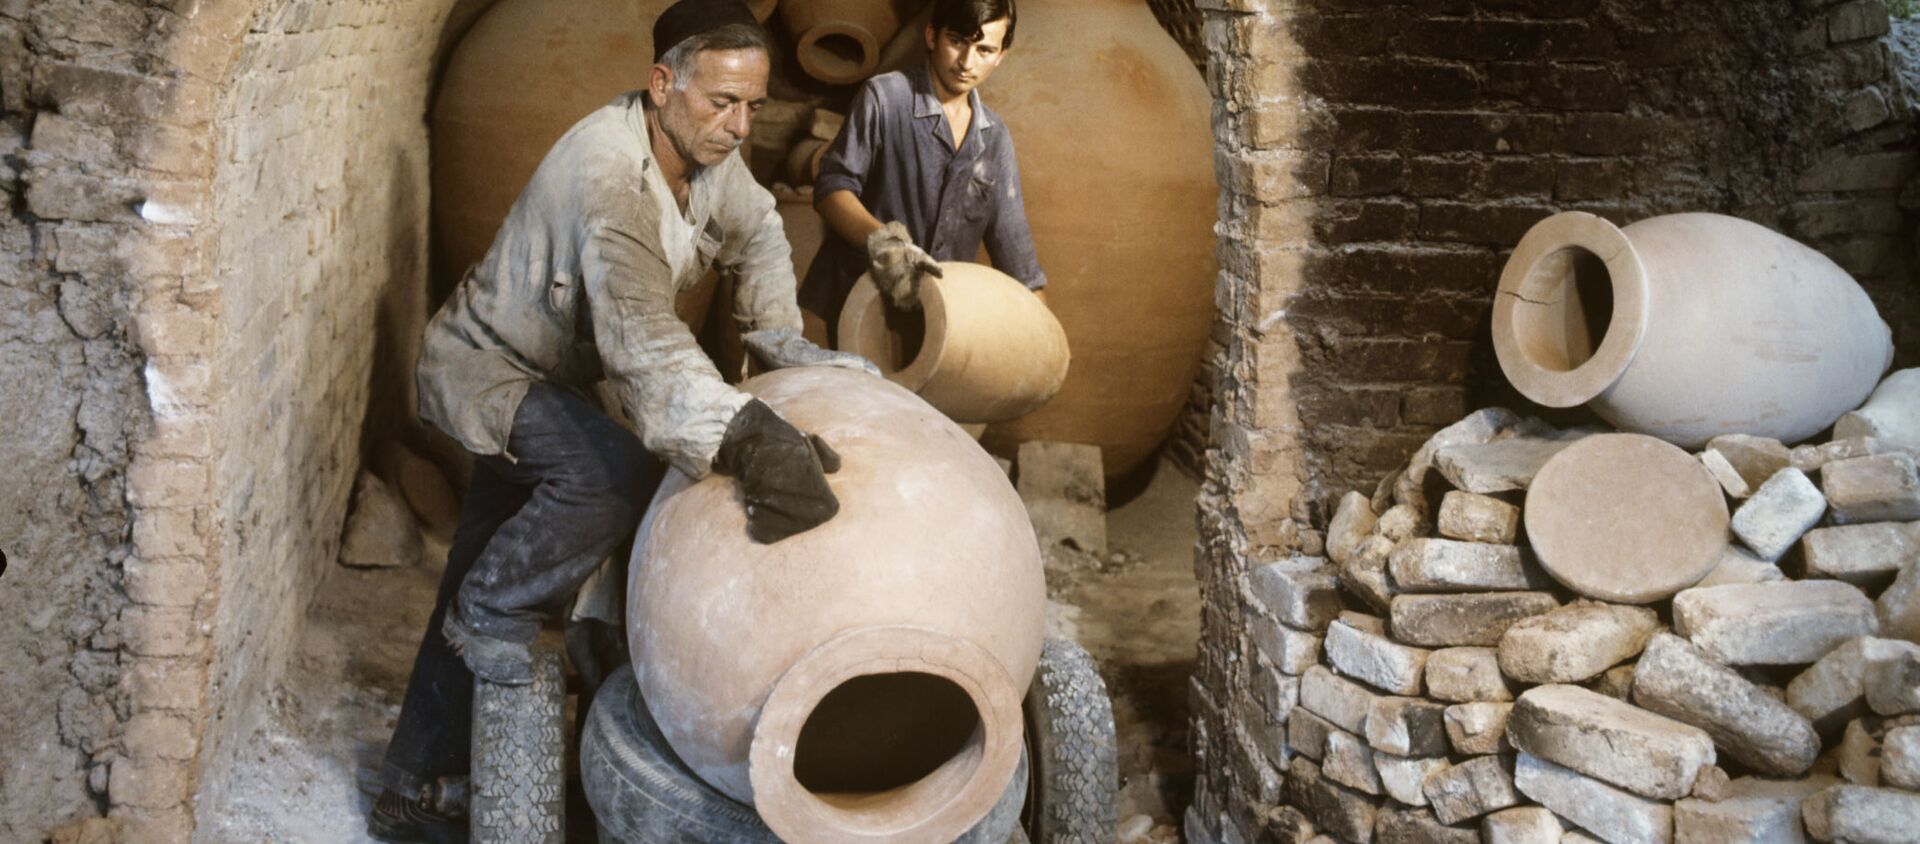 Изготовление специальных глиняных кувшинов квеври, в которых грузины традиционно хранят вино - Sputnik Грузия, 1920, 28.03.2021